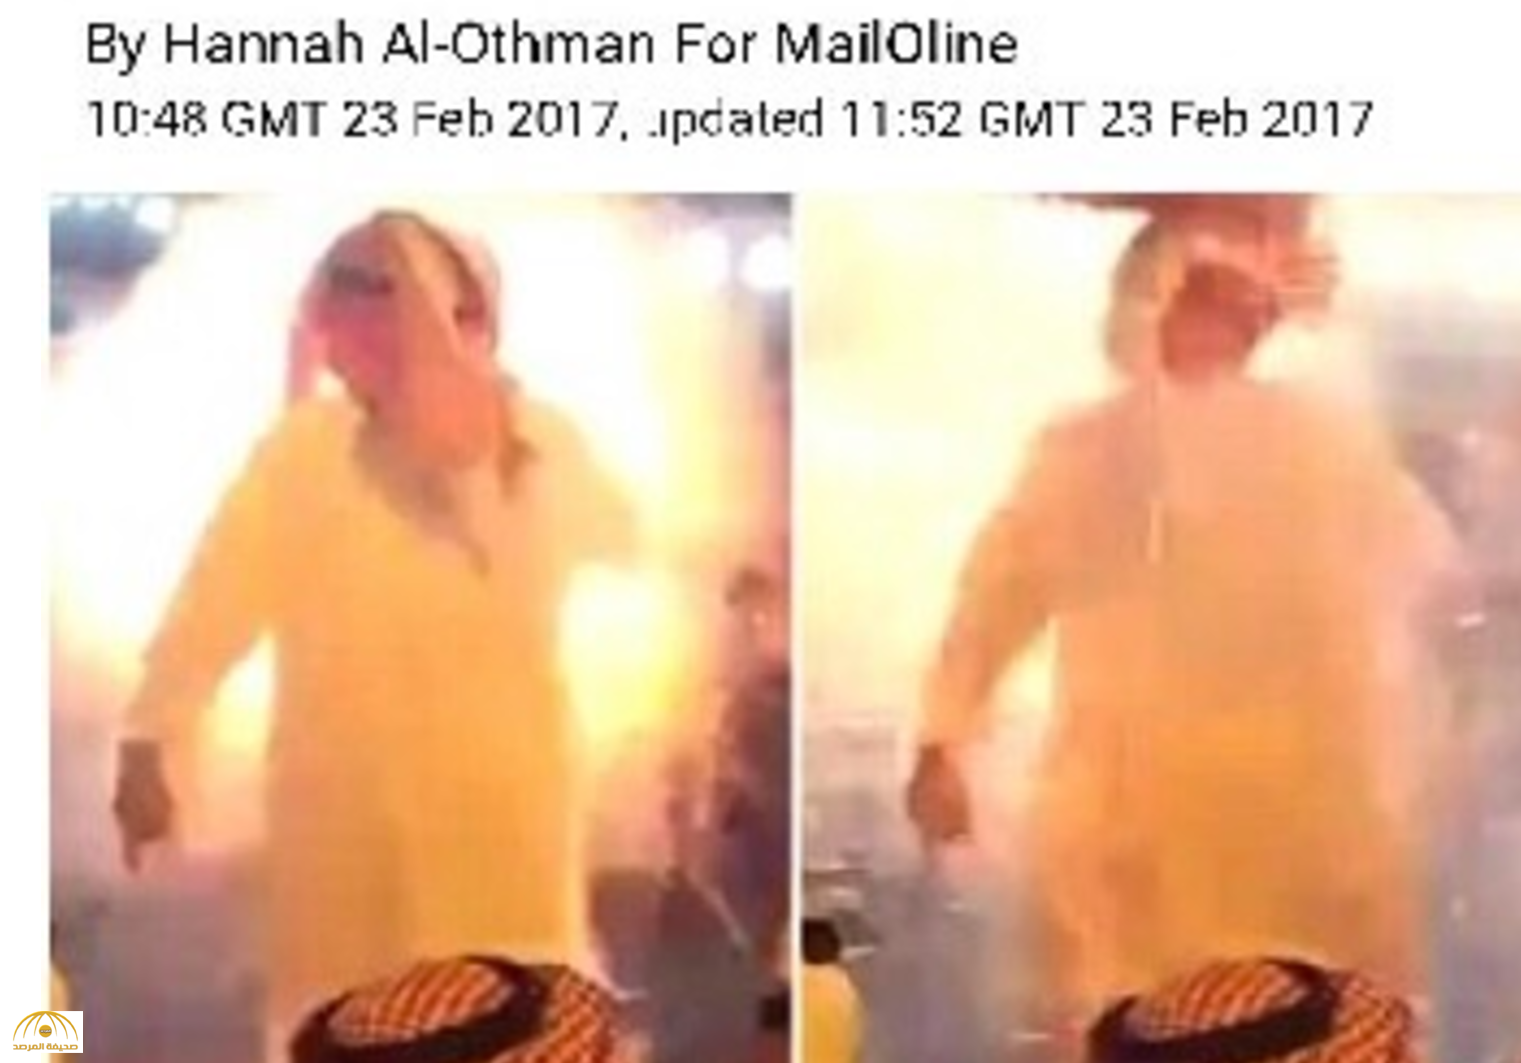 بالفيديو : بعد انفجار غطاء رأسه برصاصة و نجاته بأعجوبة .. سعودي يتصدر الصفحات الأولى لـ "الديلي ميل"